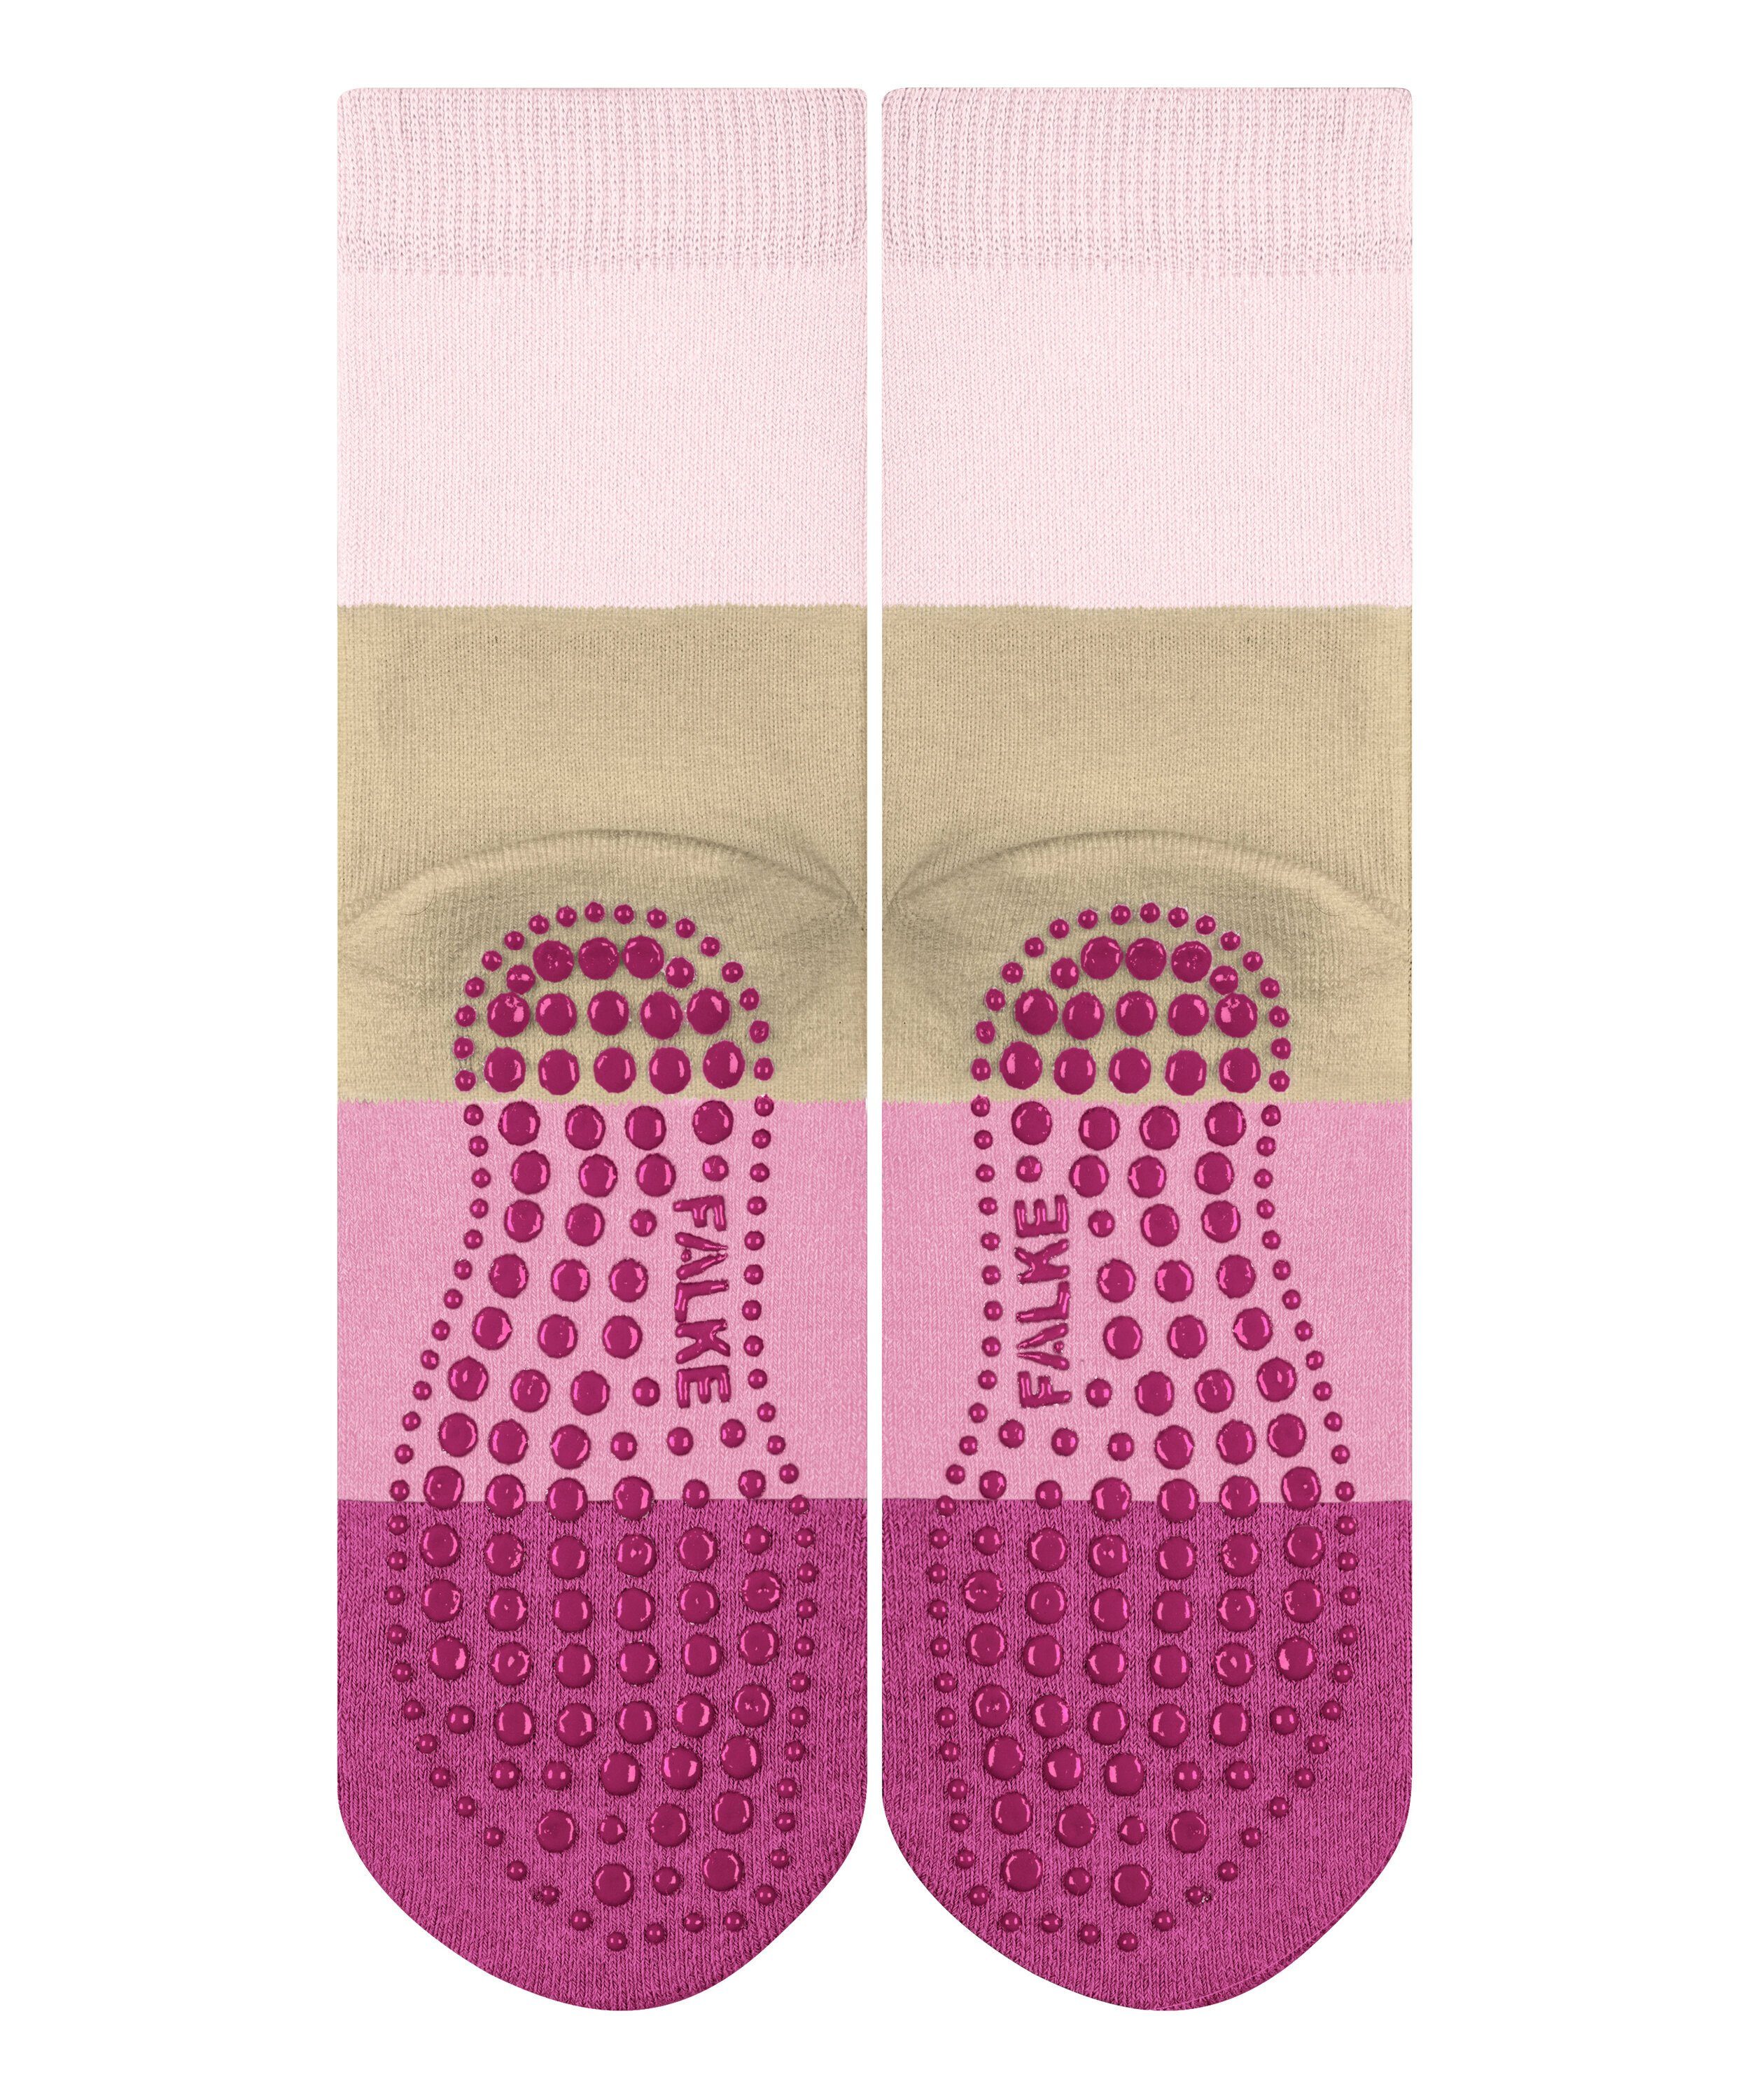 powderrose Socken (8900) FALKE (1-Paar) Summer